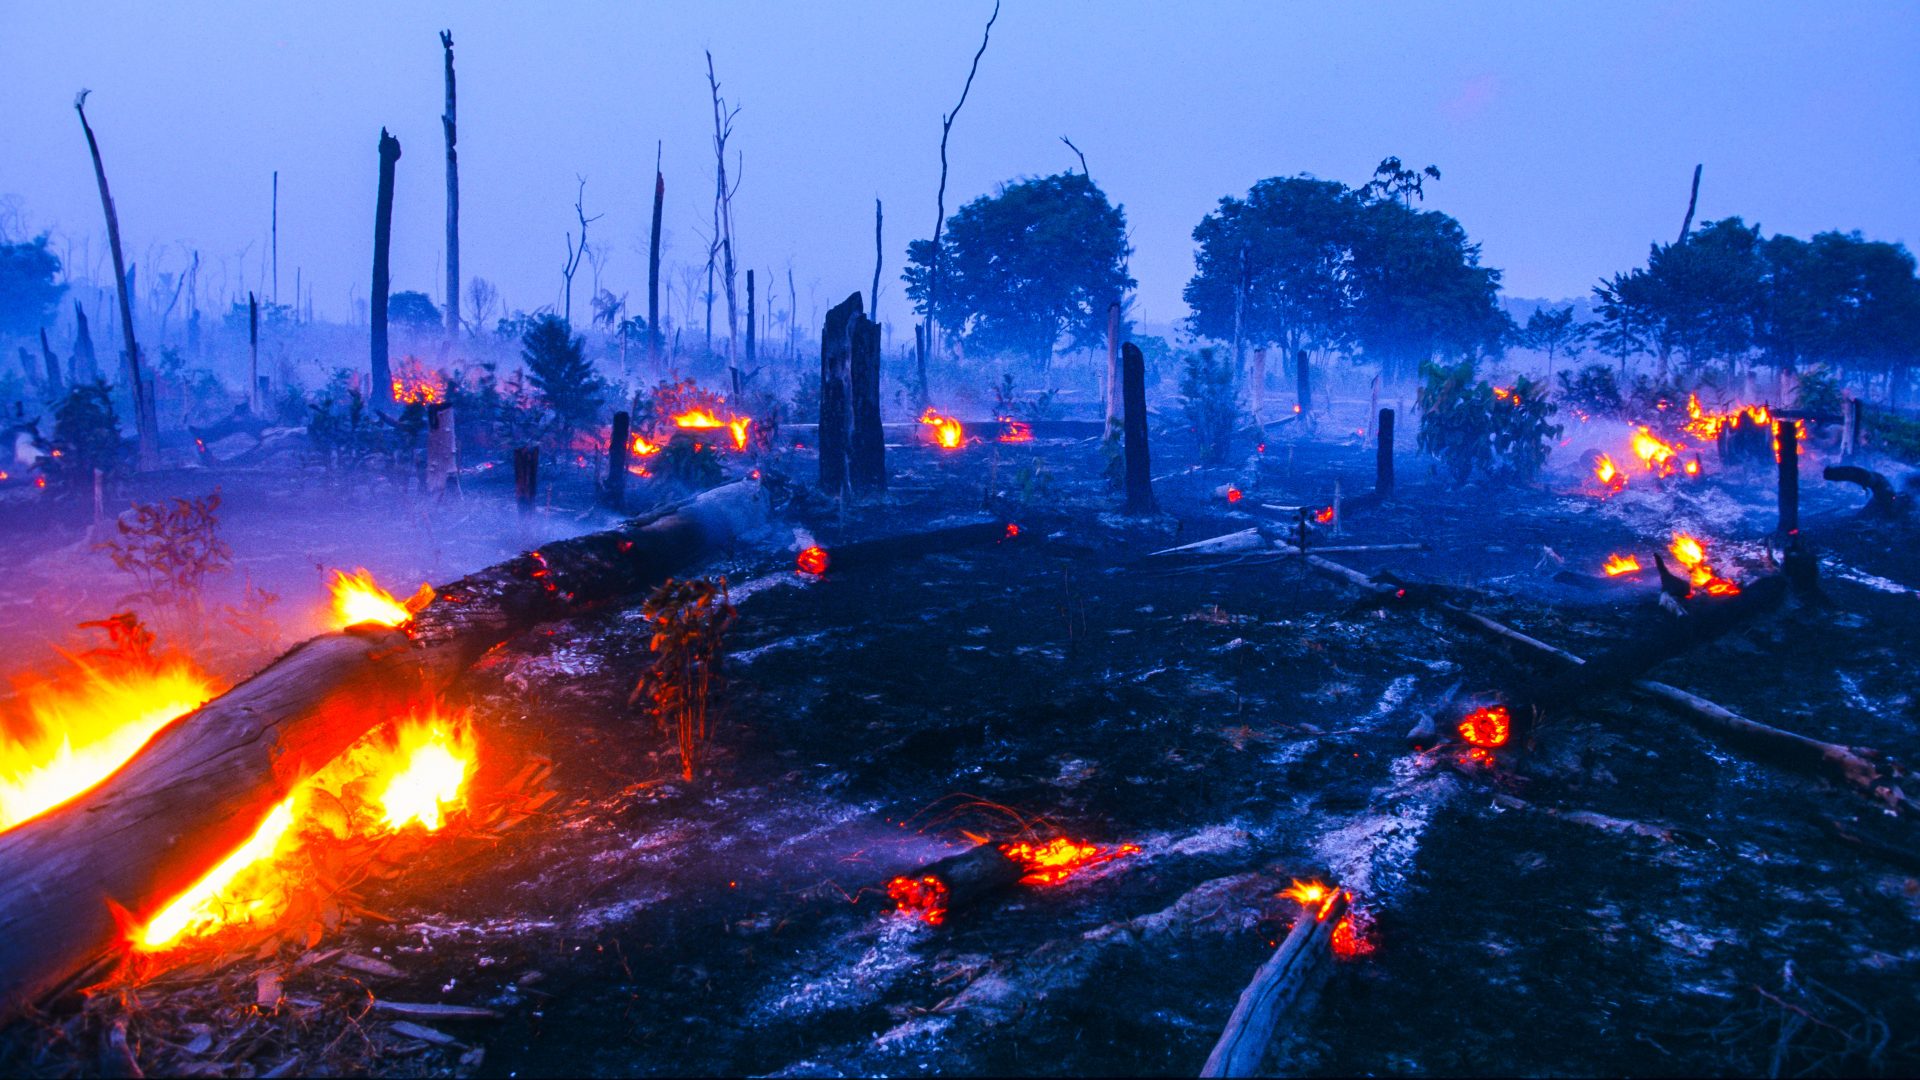 Dados indicam que 21,8% do Brasil foi atingido por queimadas - Foto: Reprodução/Canva